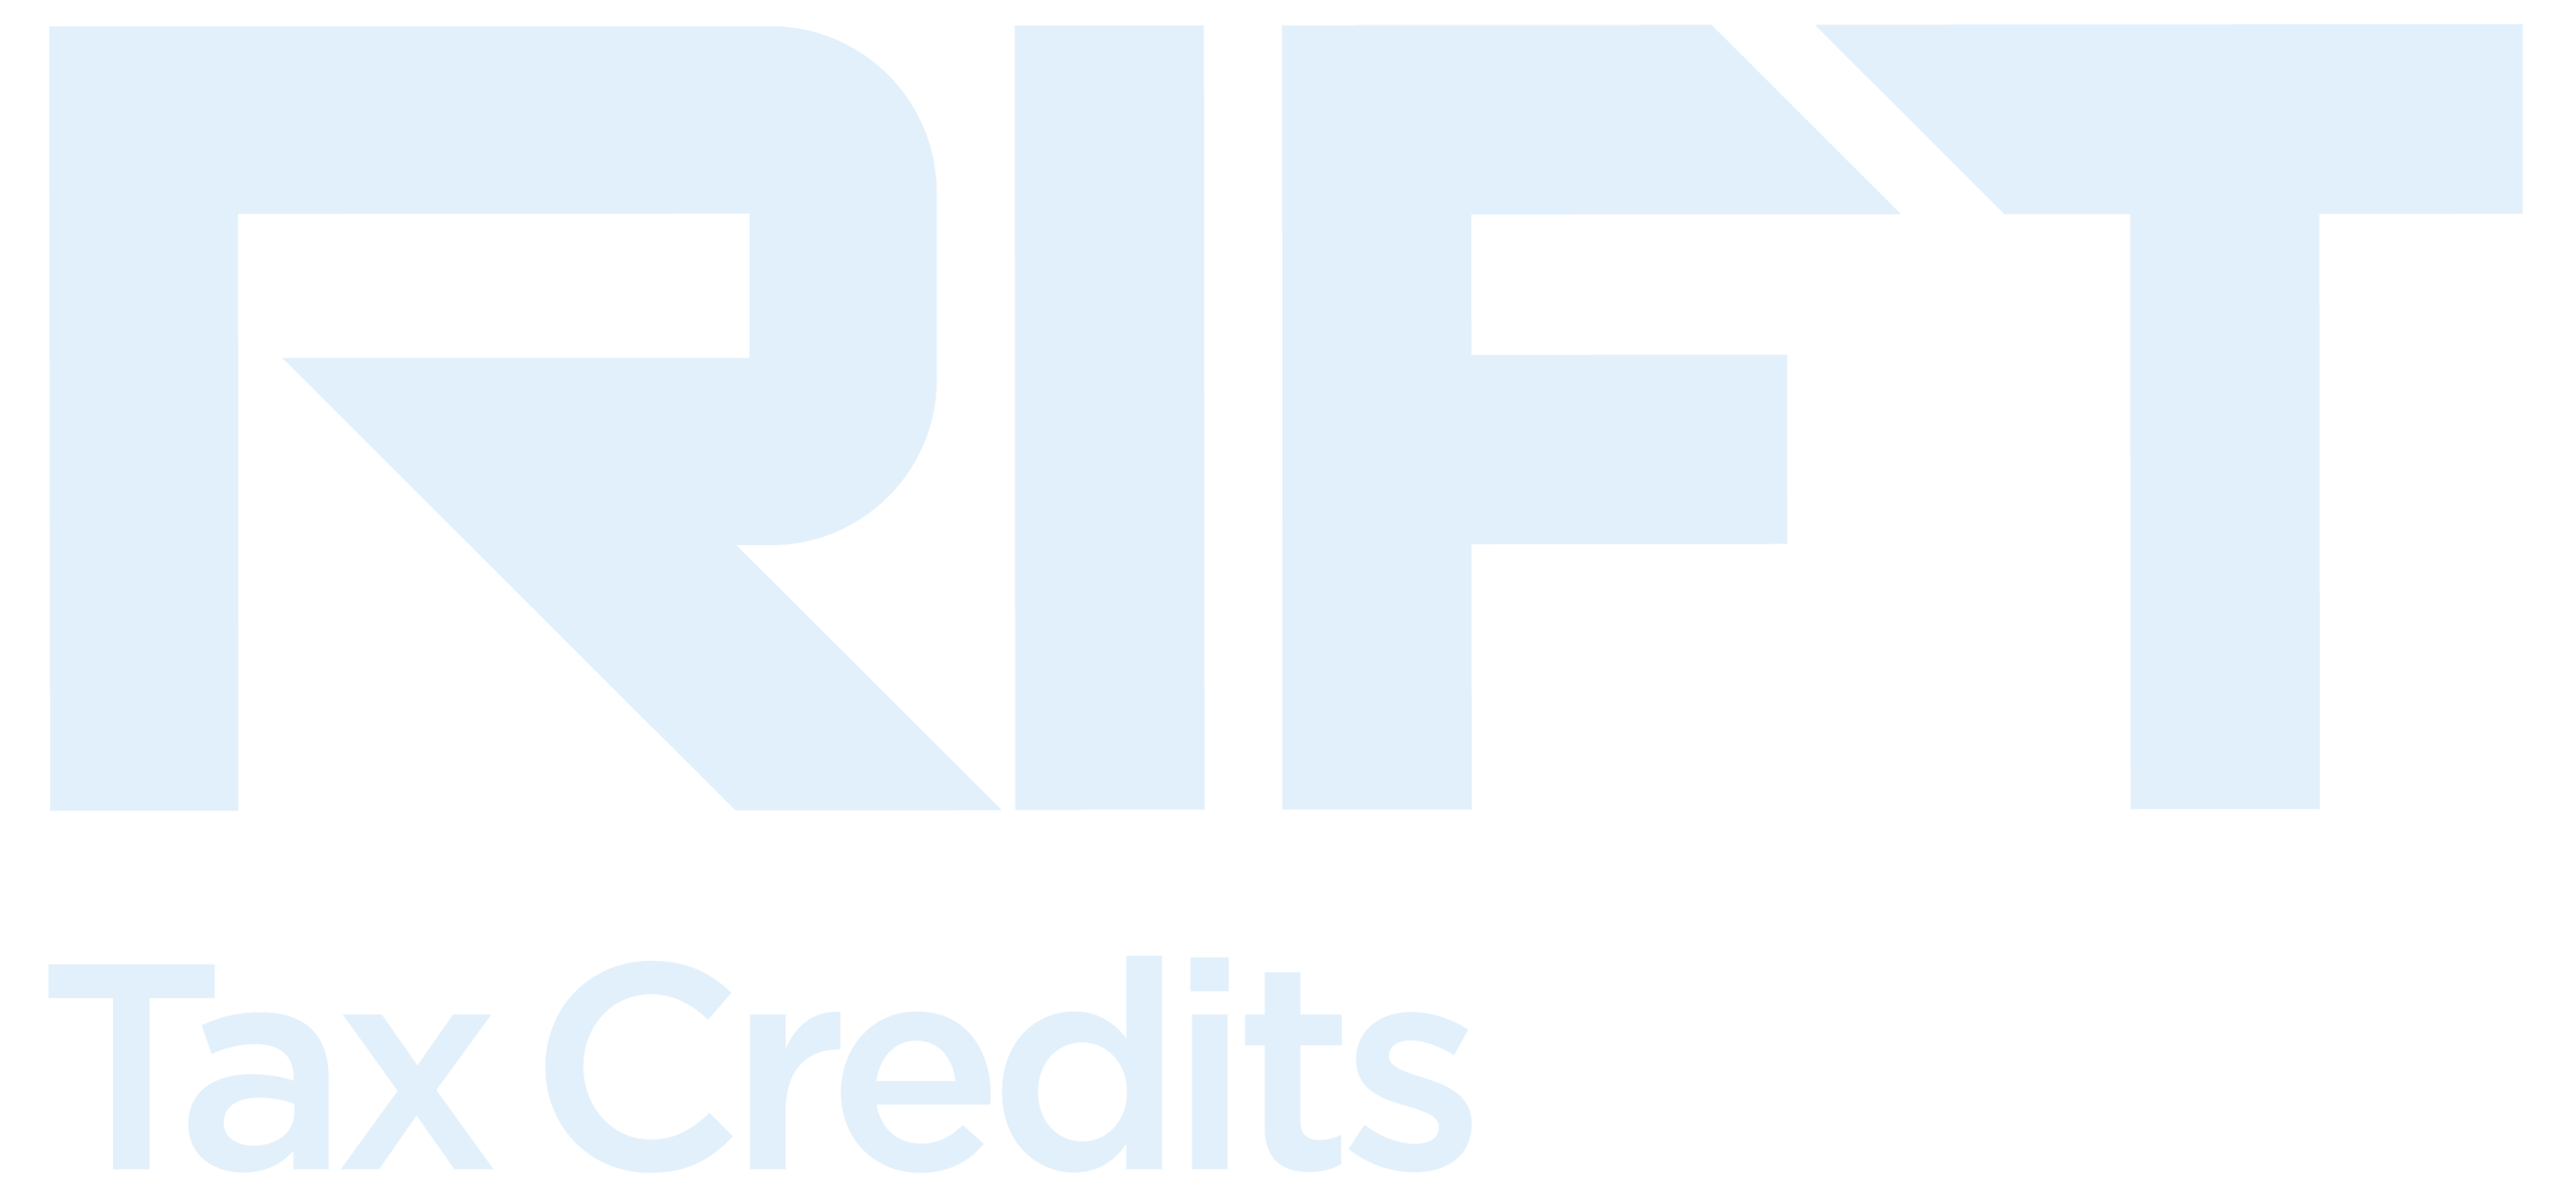 RIFT - R&D Tax Credits